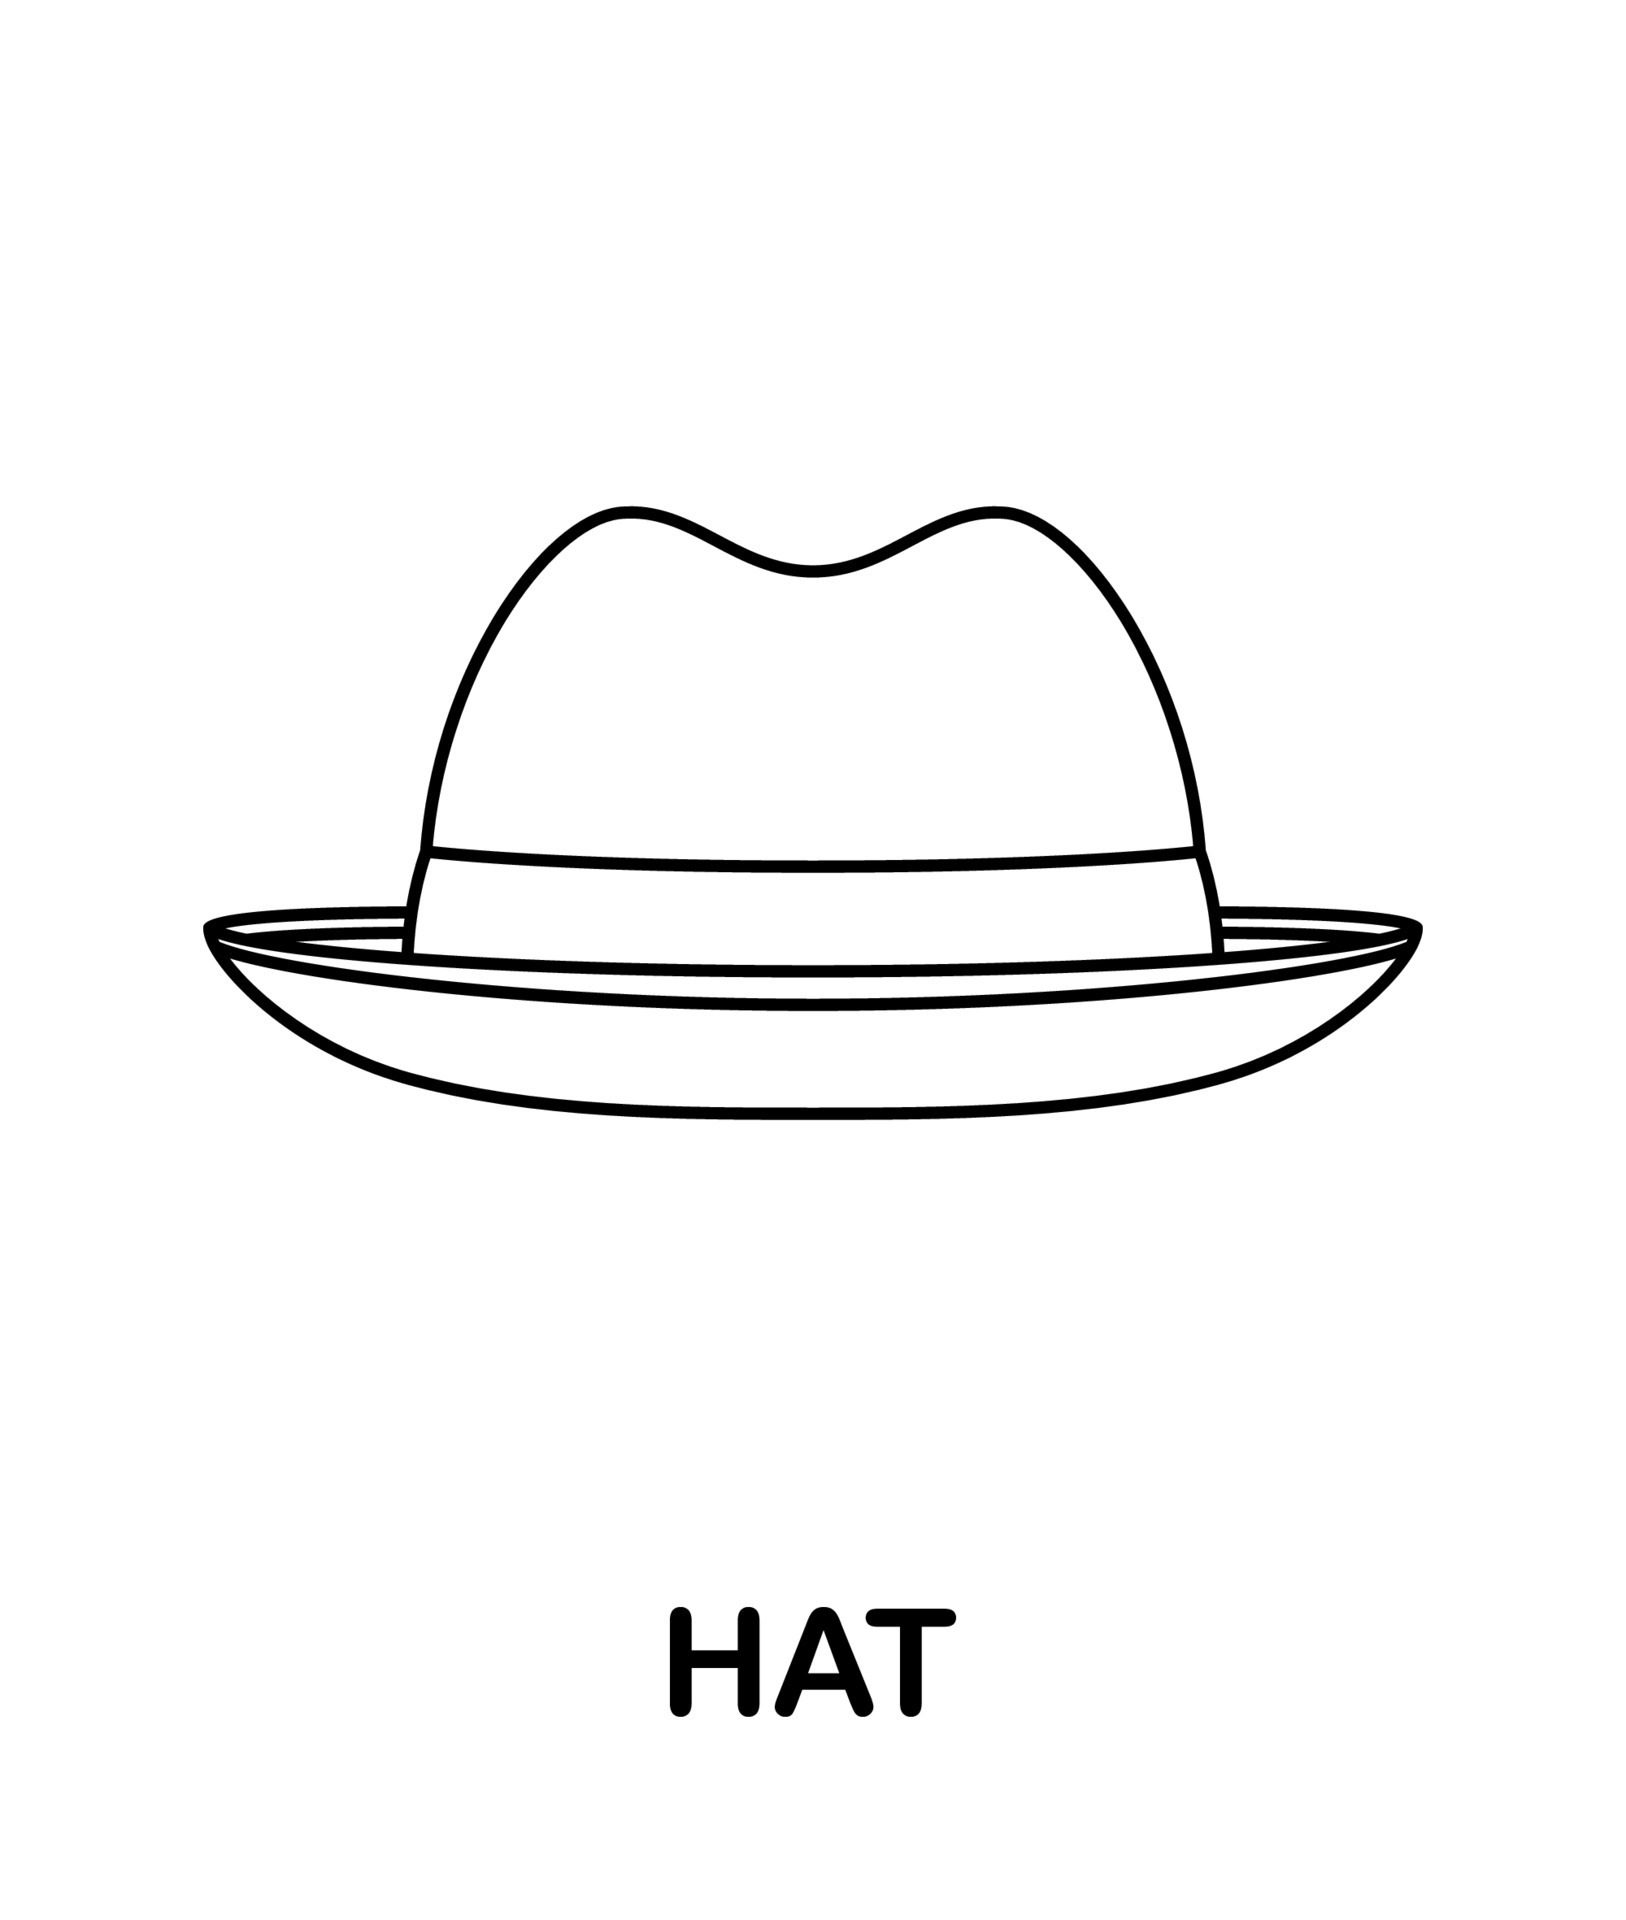 desenho de menino feliz com um chapéu isolado para colorir 17013942 Vetor  no Vecteezy